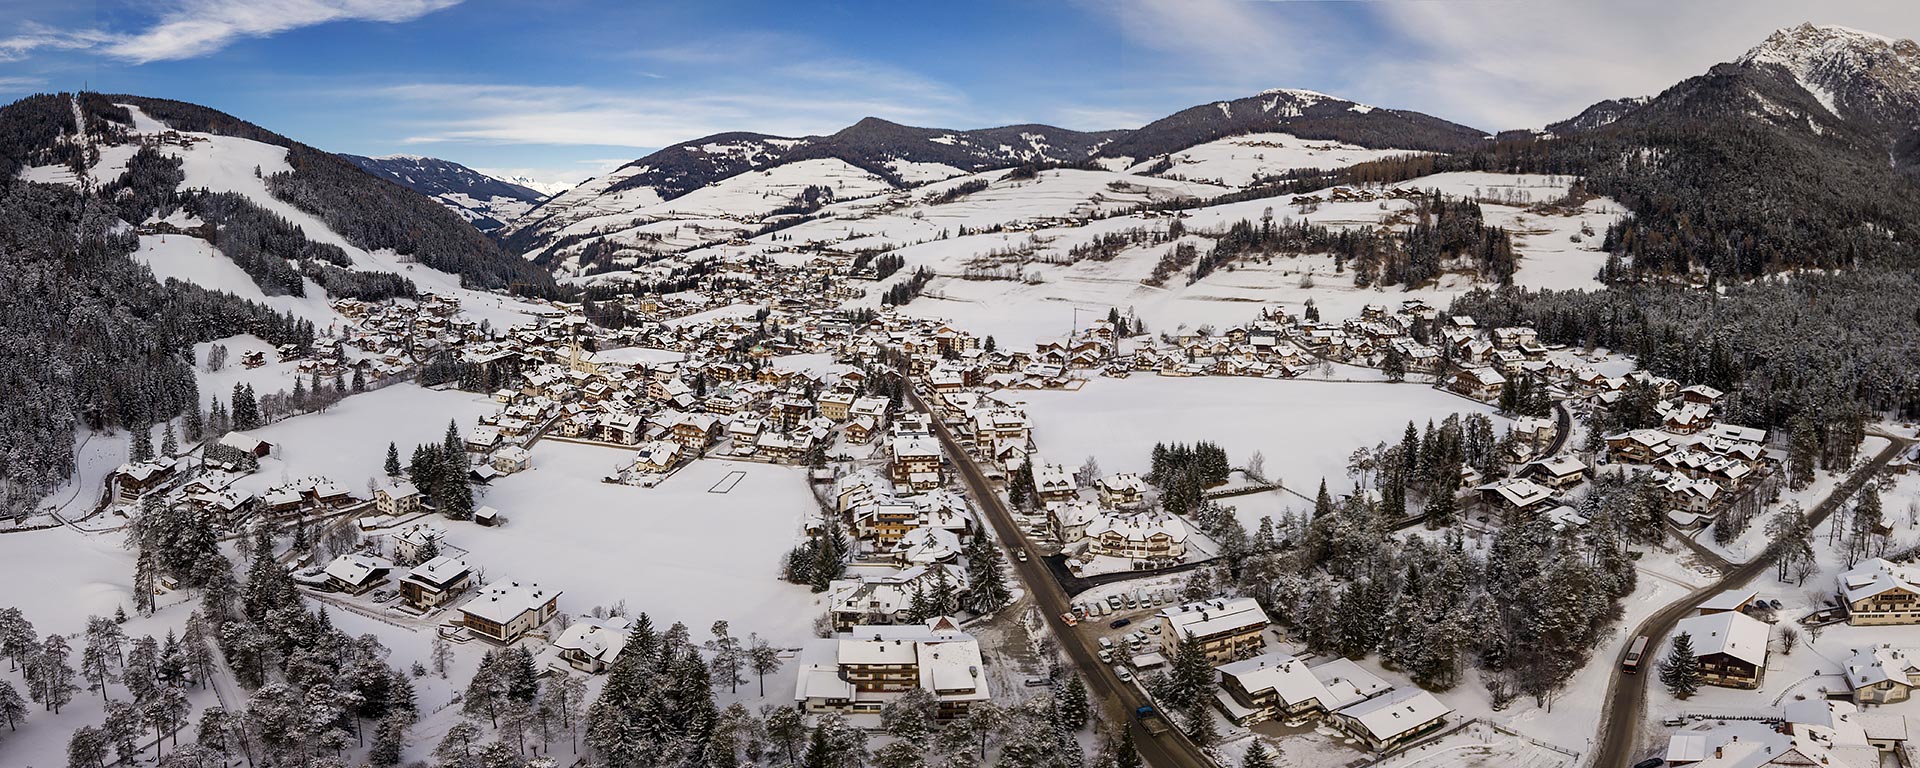 Splendid view over the snow covered locality of San Vigilio di Marebbe in winter